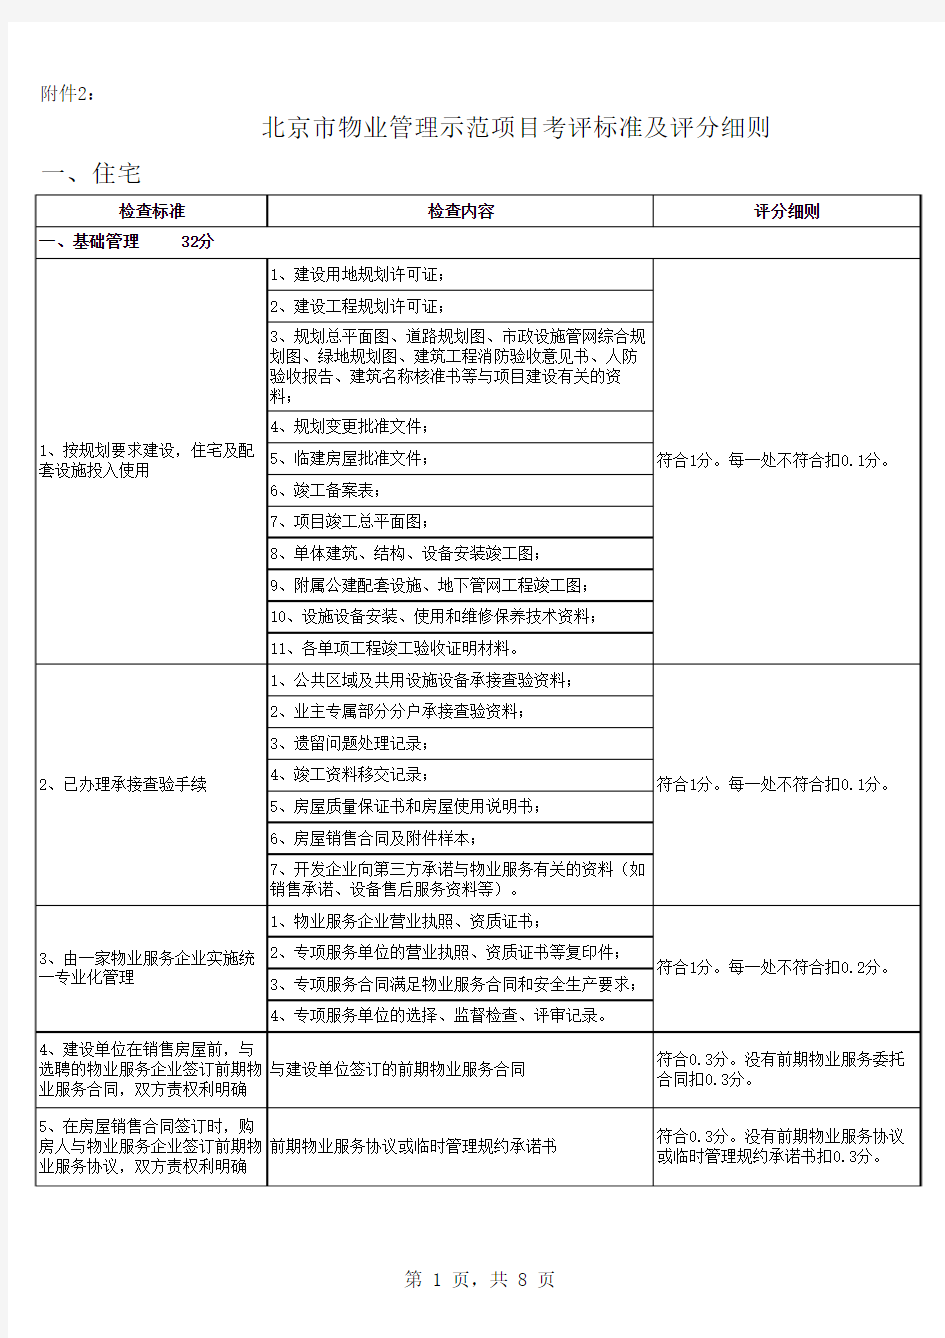 北京市物业管理示范项目考评标准及评分细则